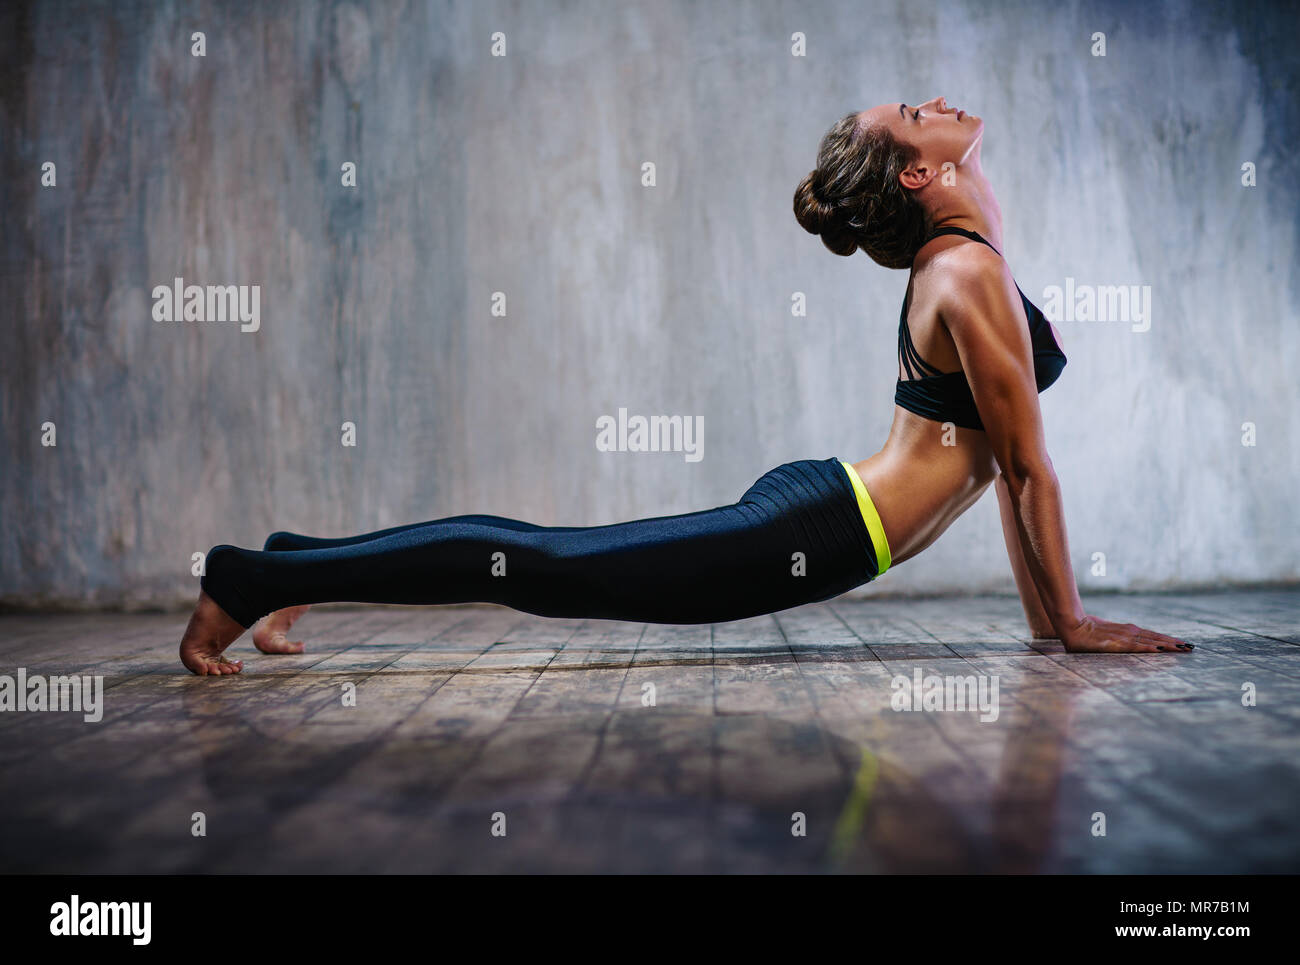 Junge schlanke sportliche Frau stretching auf Stein Wand Hintergrund Stockfoto